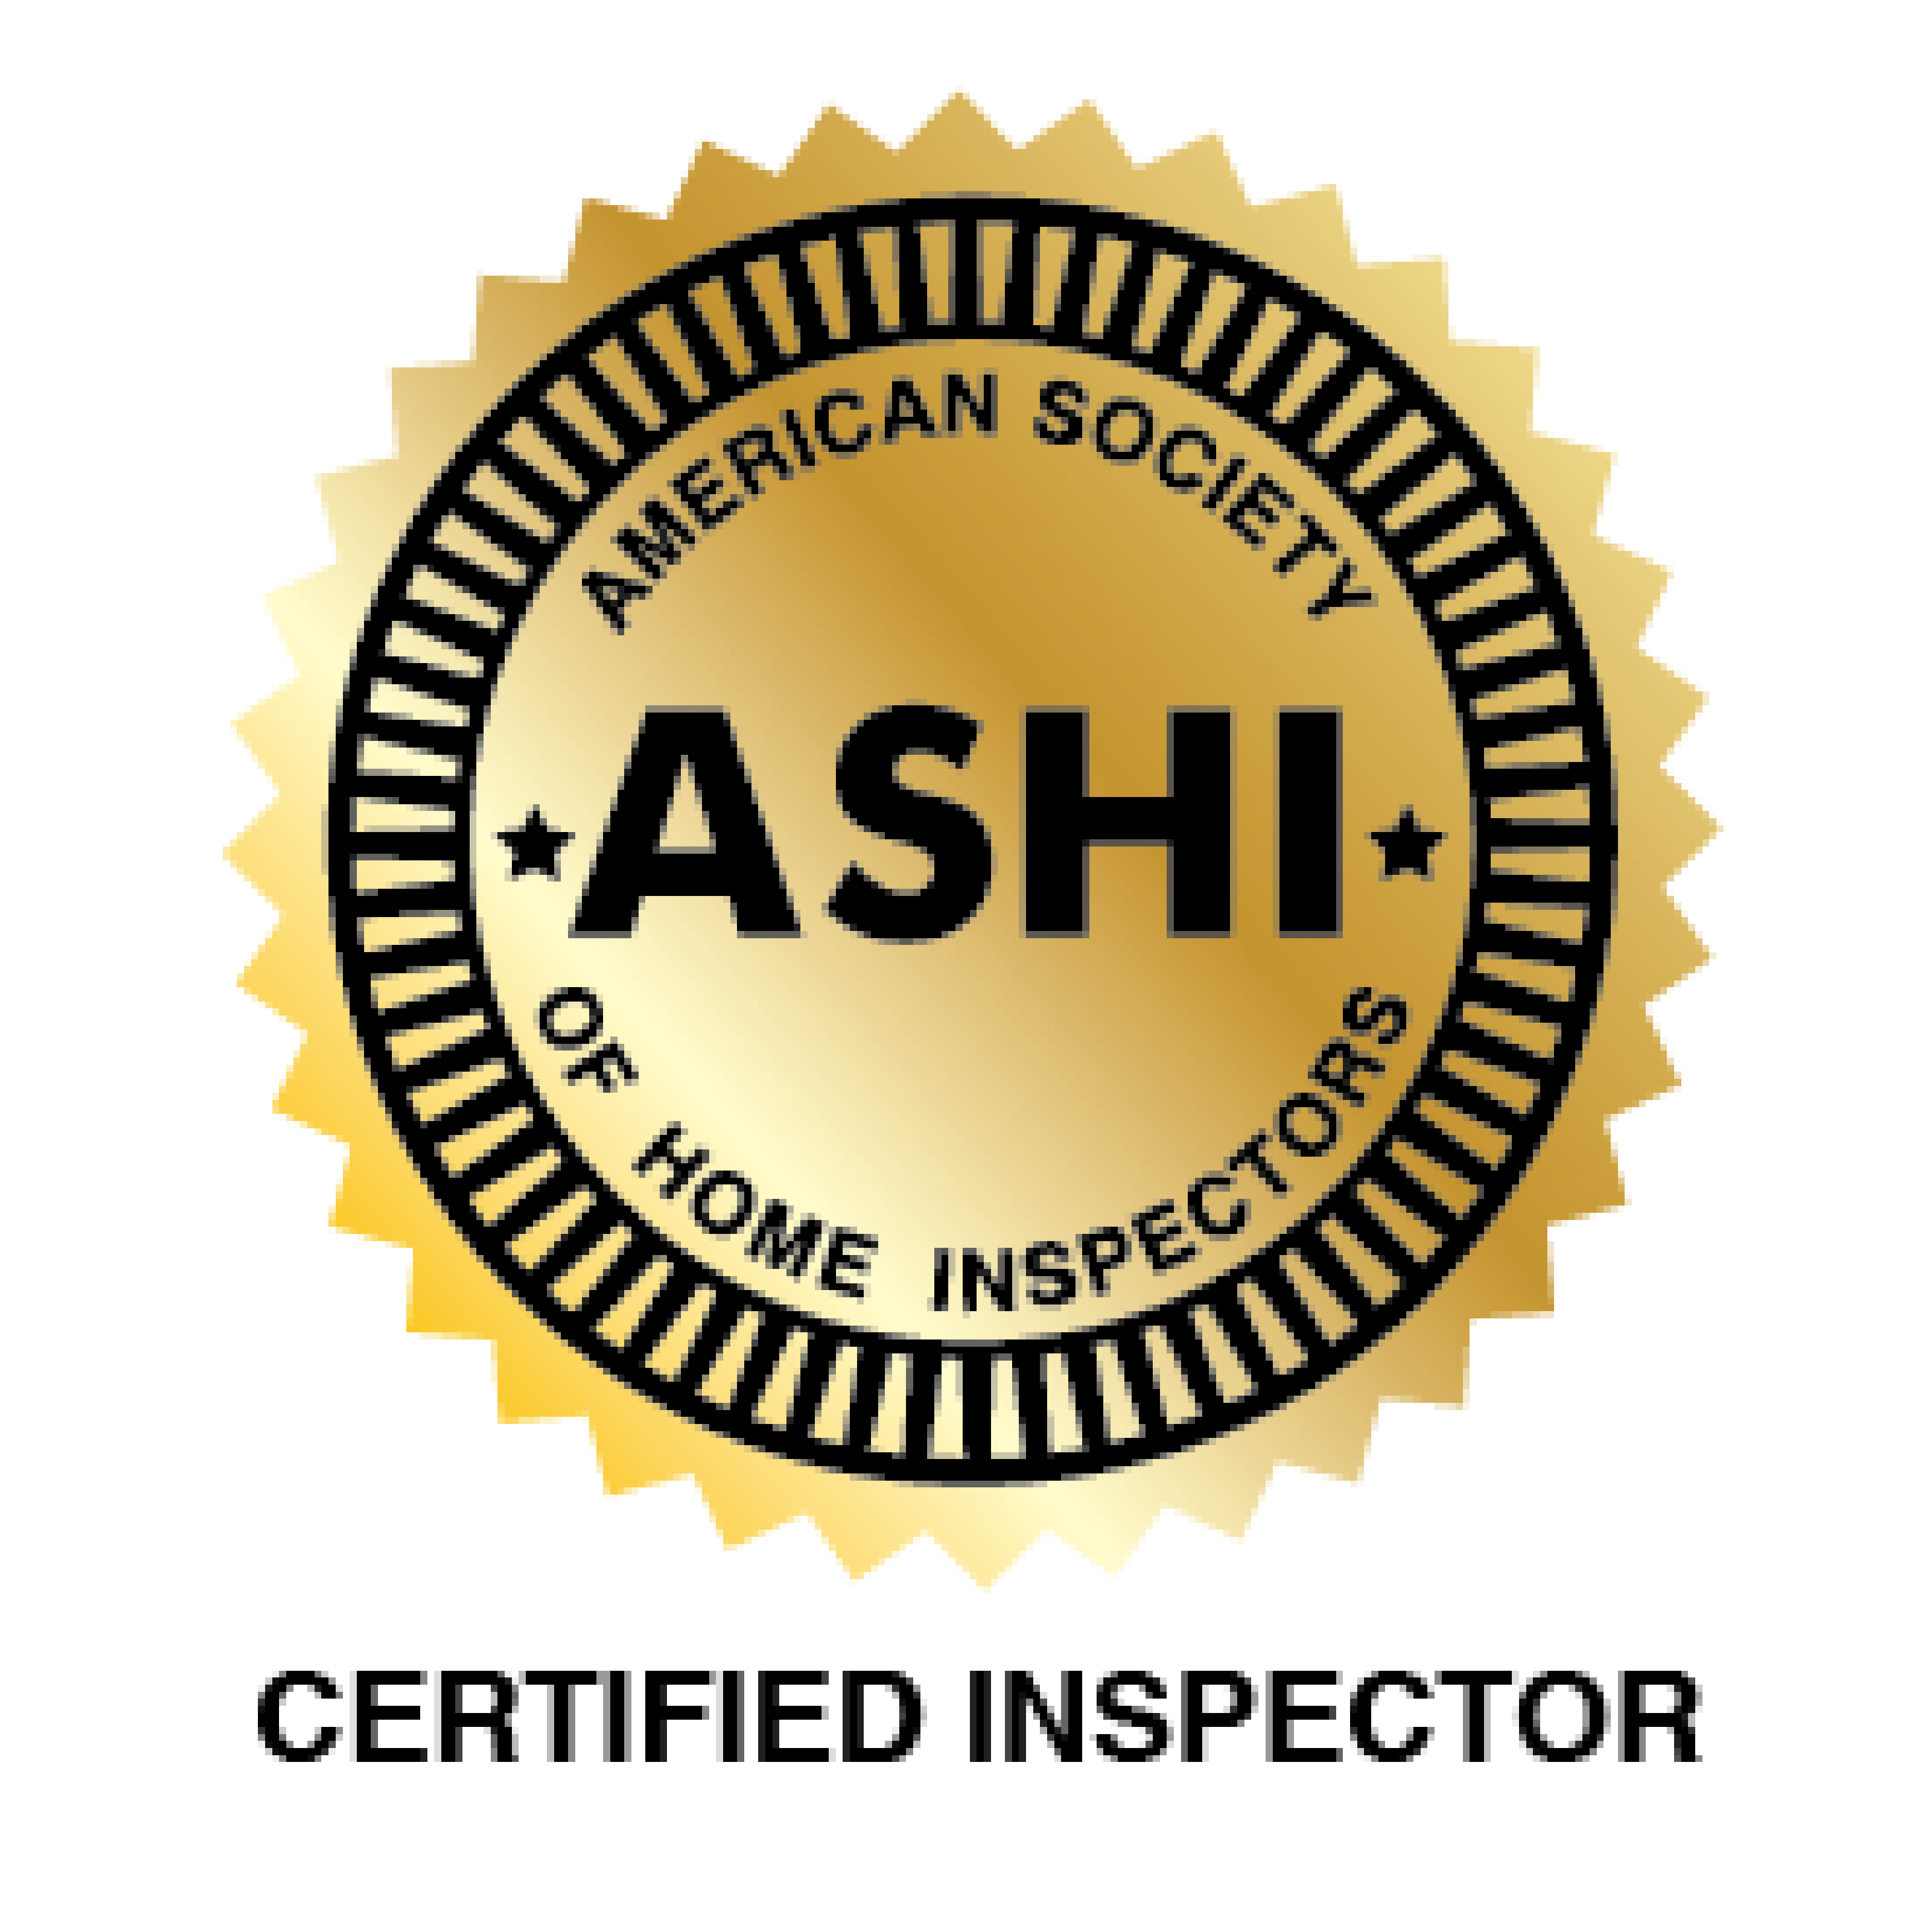 ASHI Certified